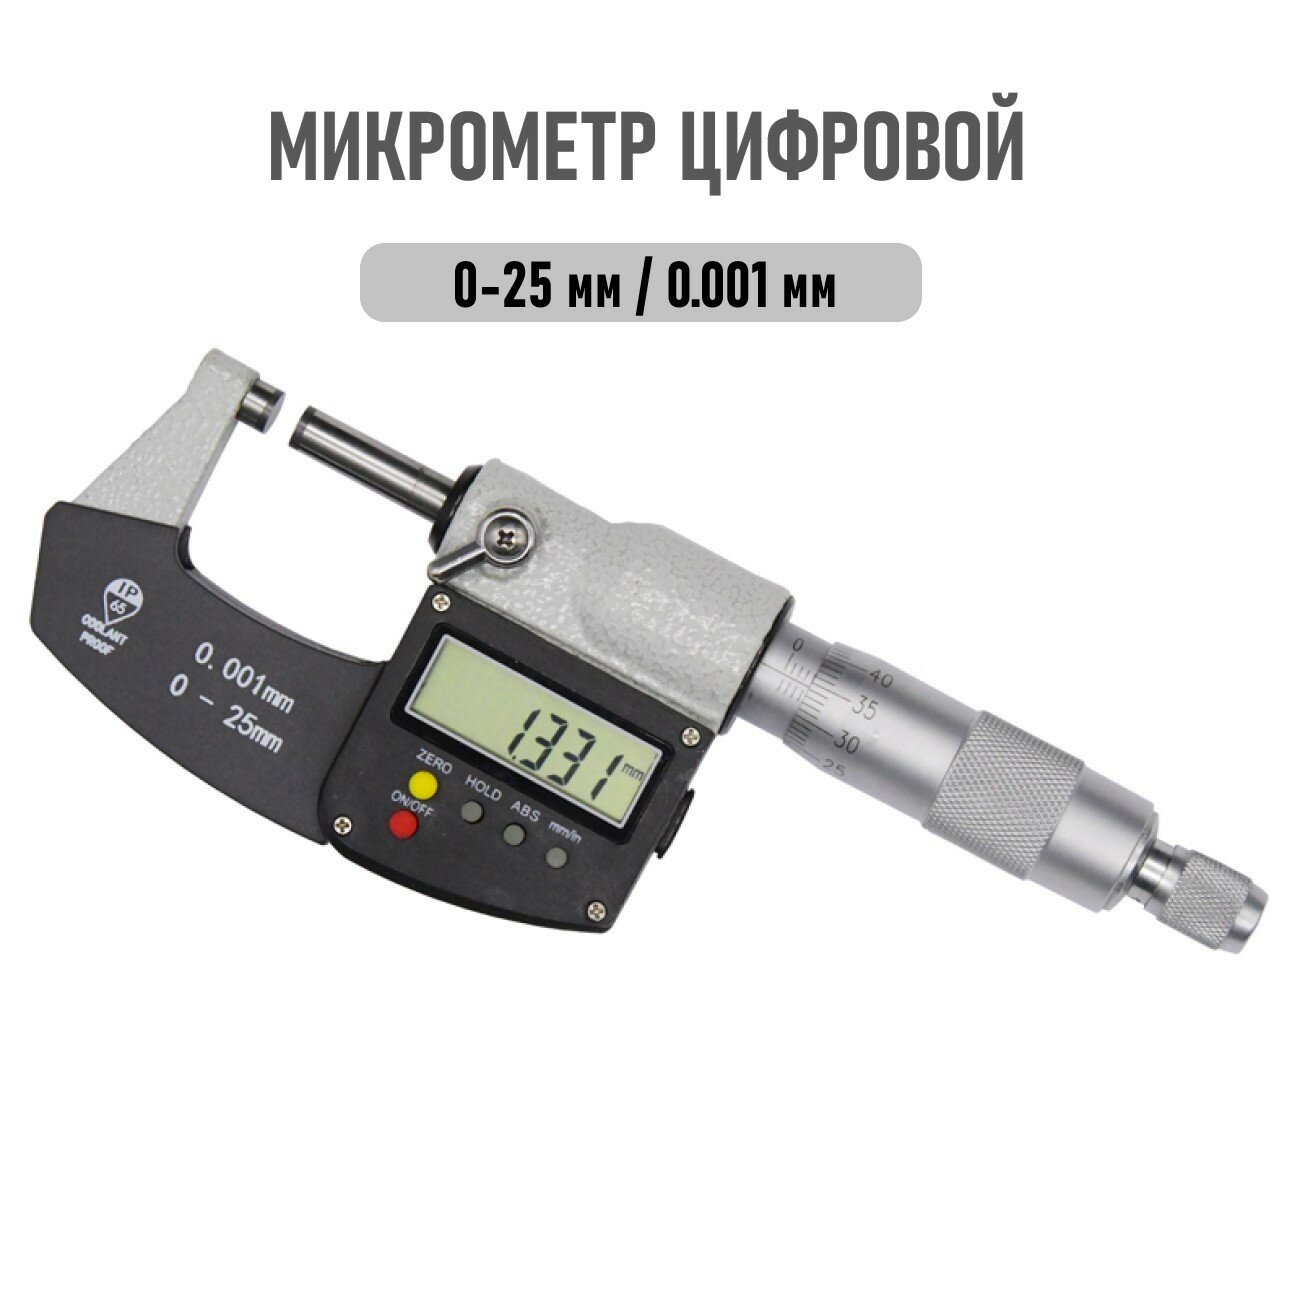 Микрометр цифровой 0-25мм точность 0001мм IP65